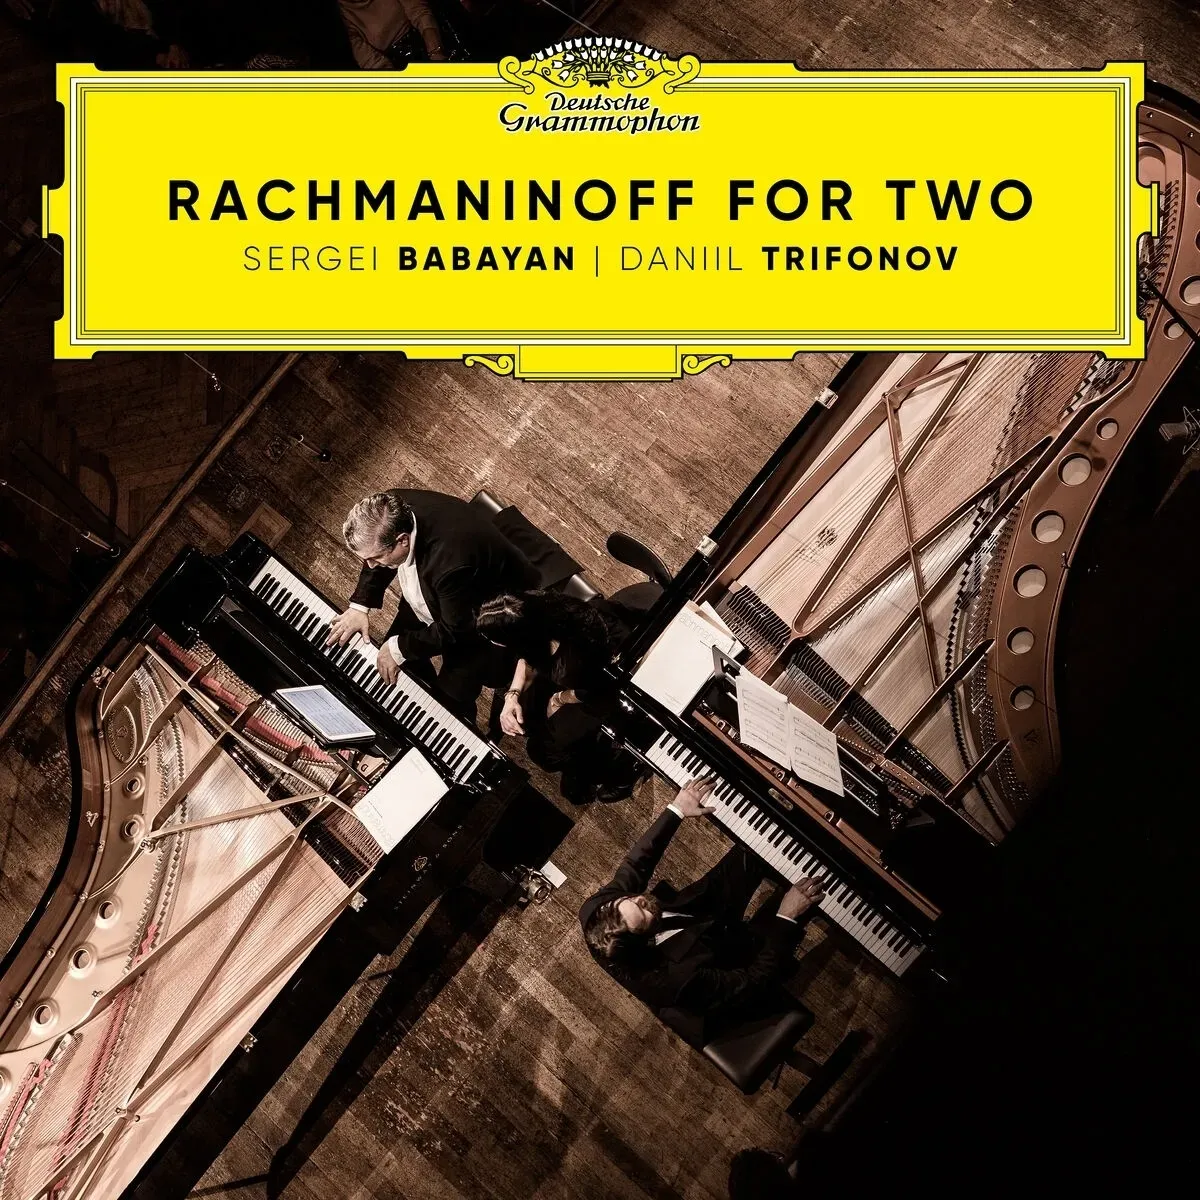 Rachmaninoff For Two - Daniil Trifonov  Sergei Babayan. (CD)